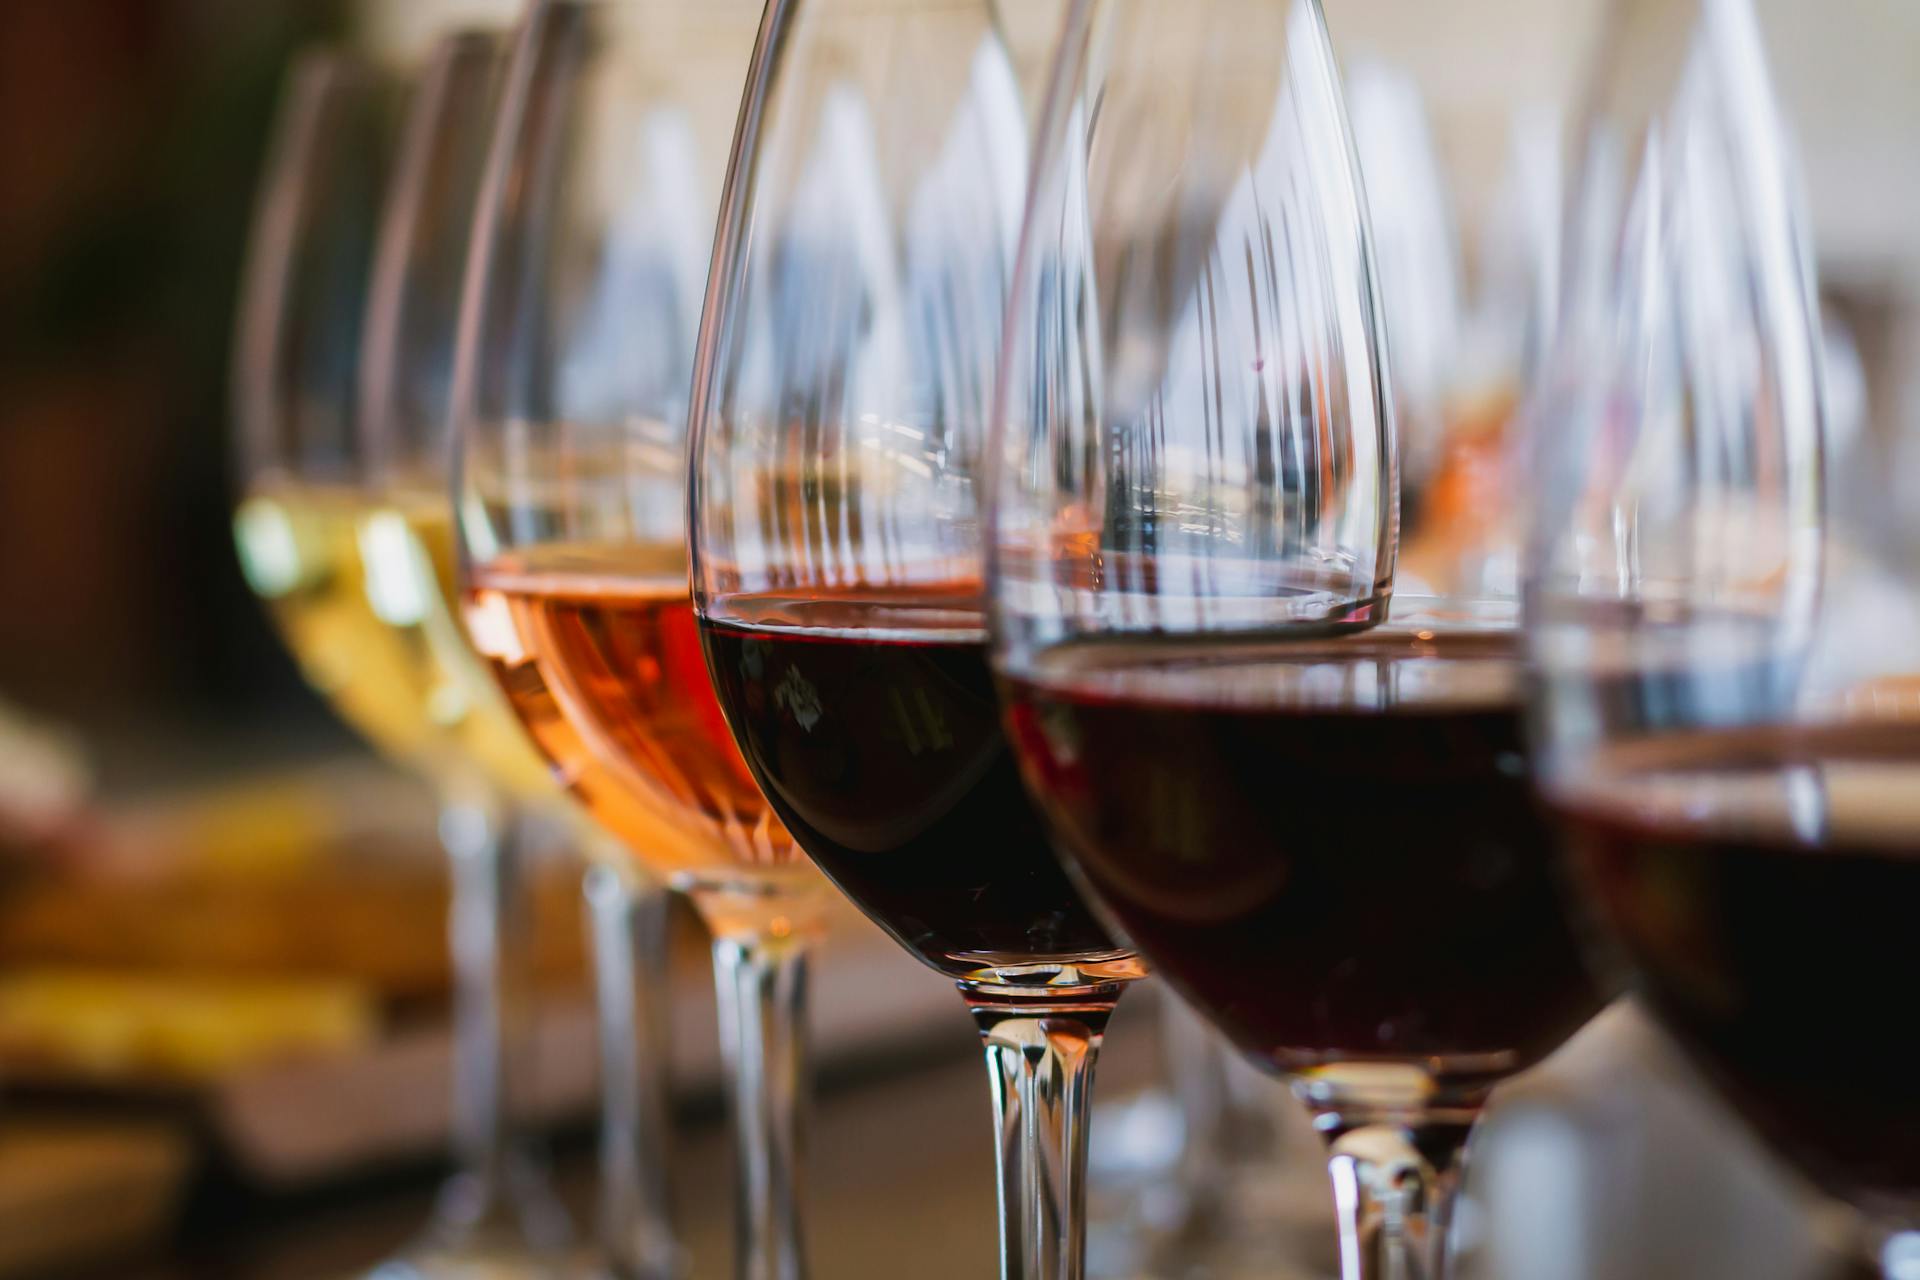 Kreikkalaisia viinejä laseissa rivissä.